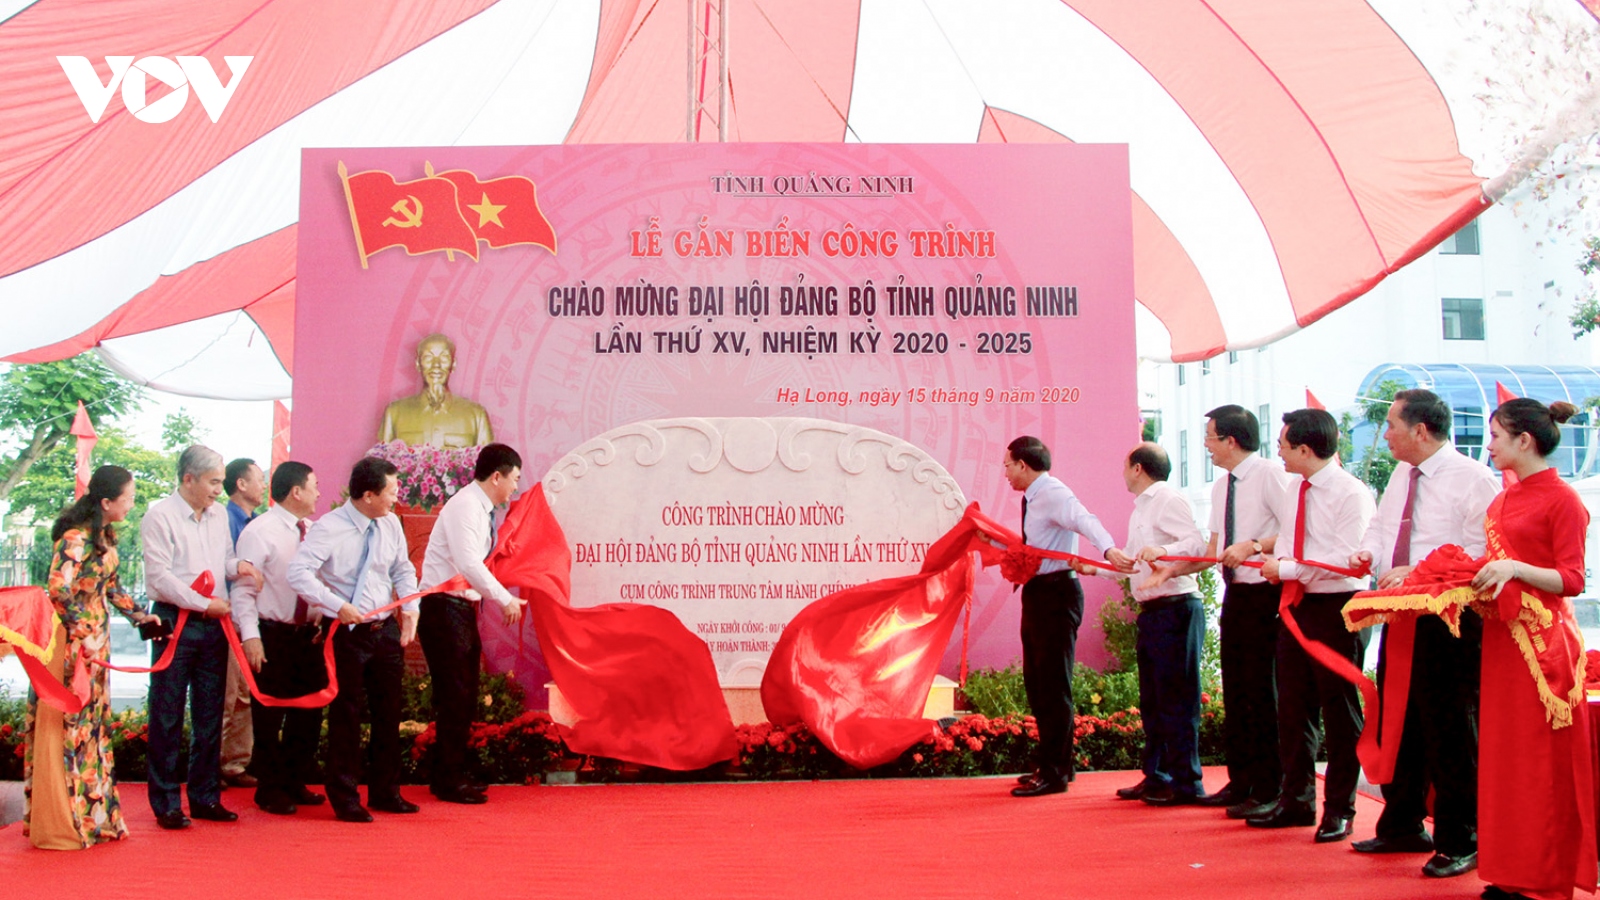 Đại hội Đảng bộ tỉnh Quảng Ninh lần thứ XV diễn ra từ ngày 25-27/9